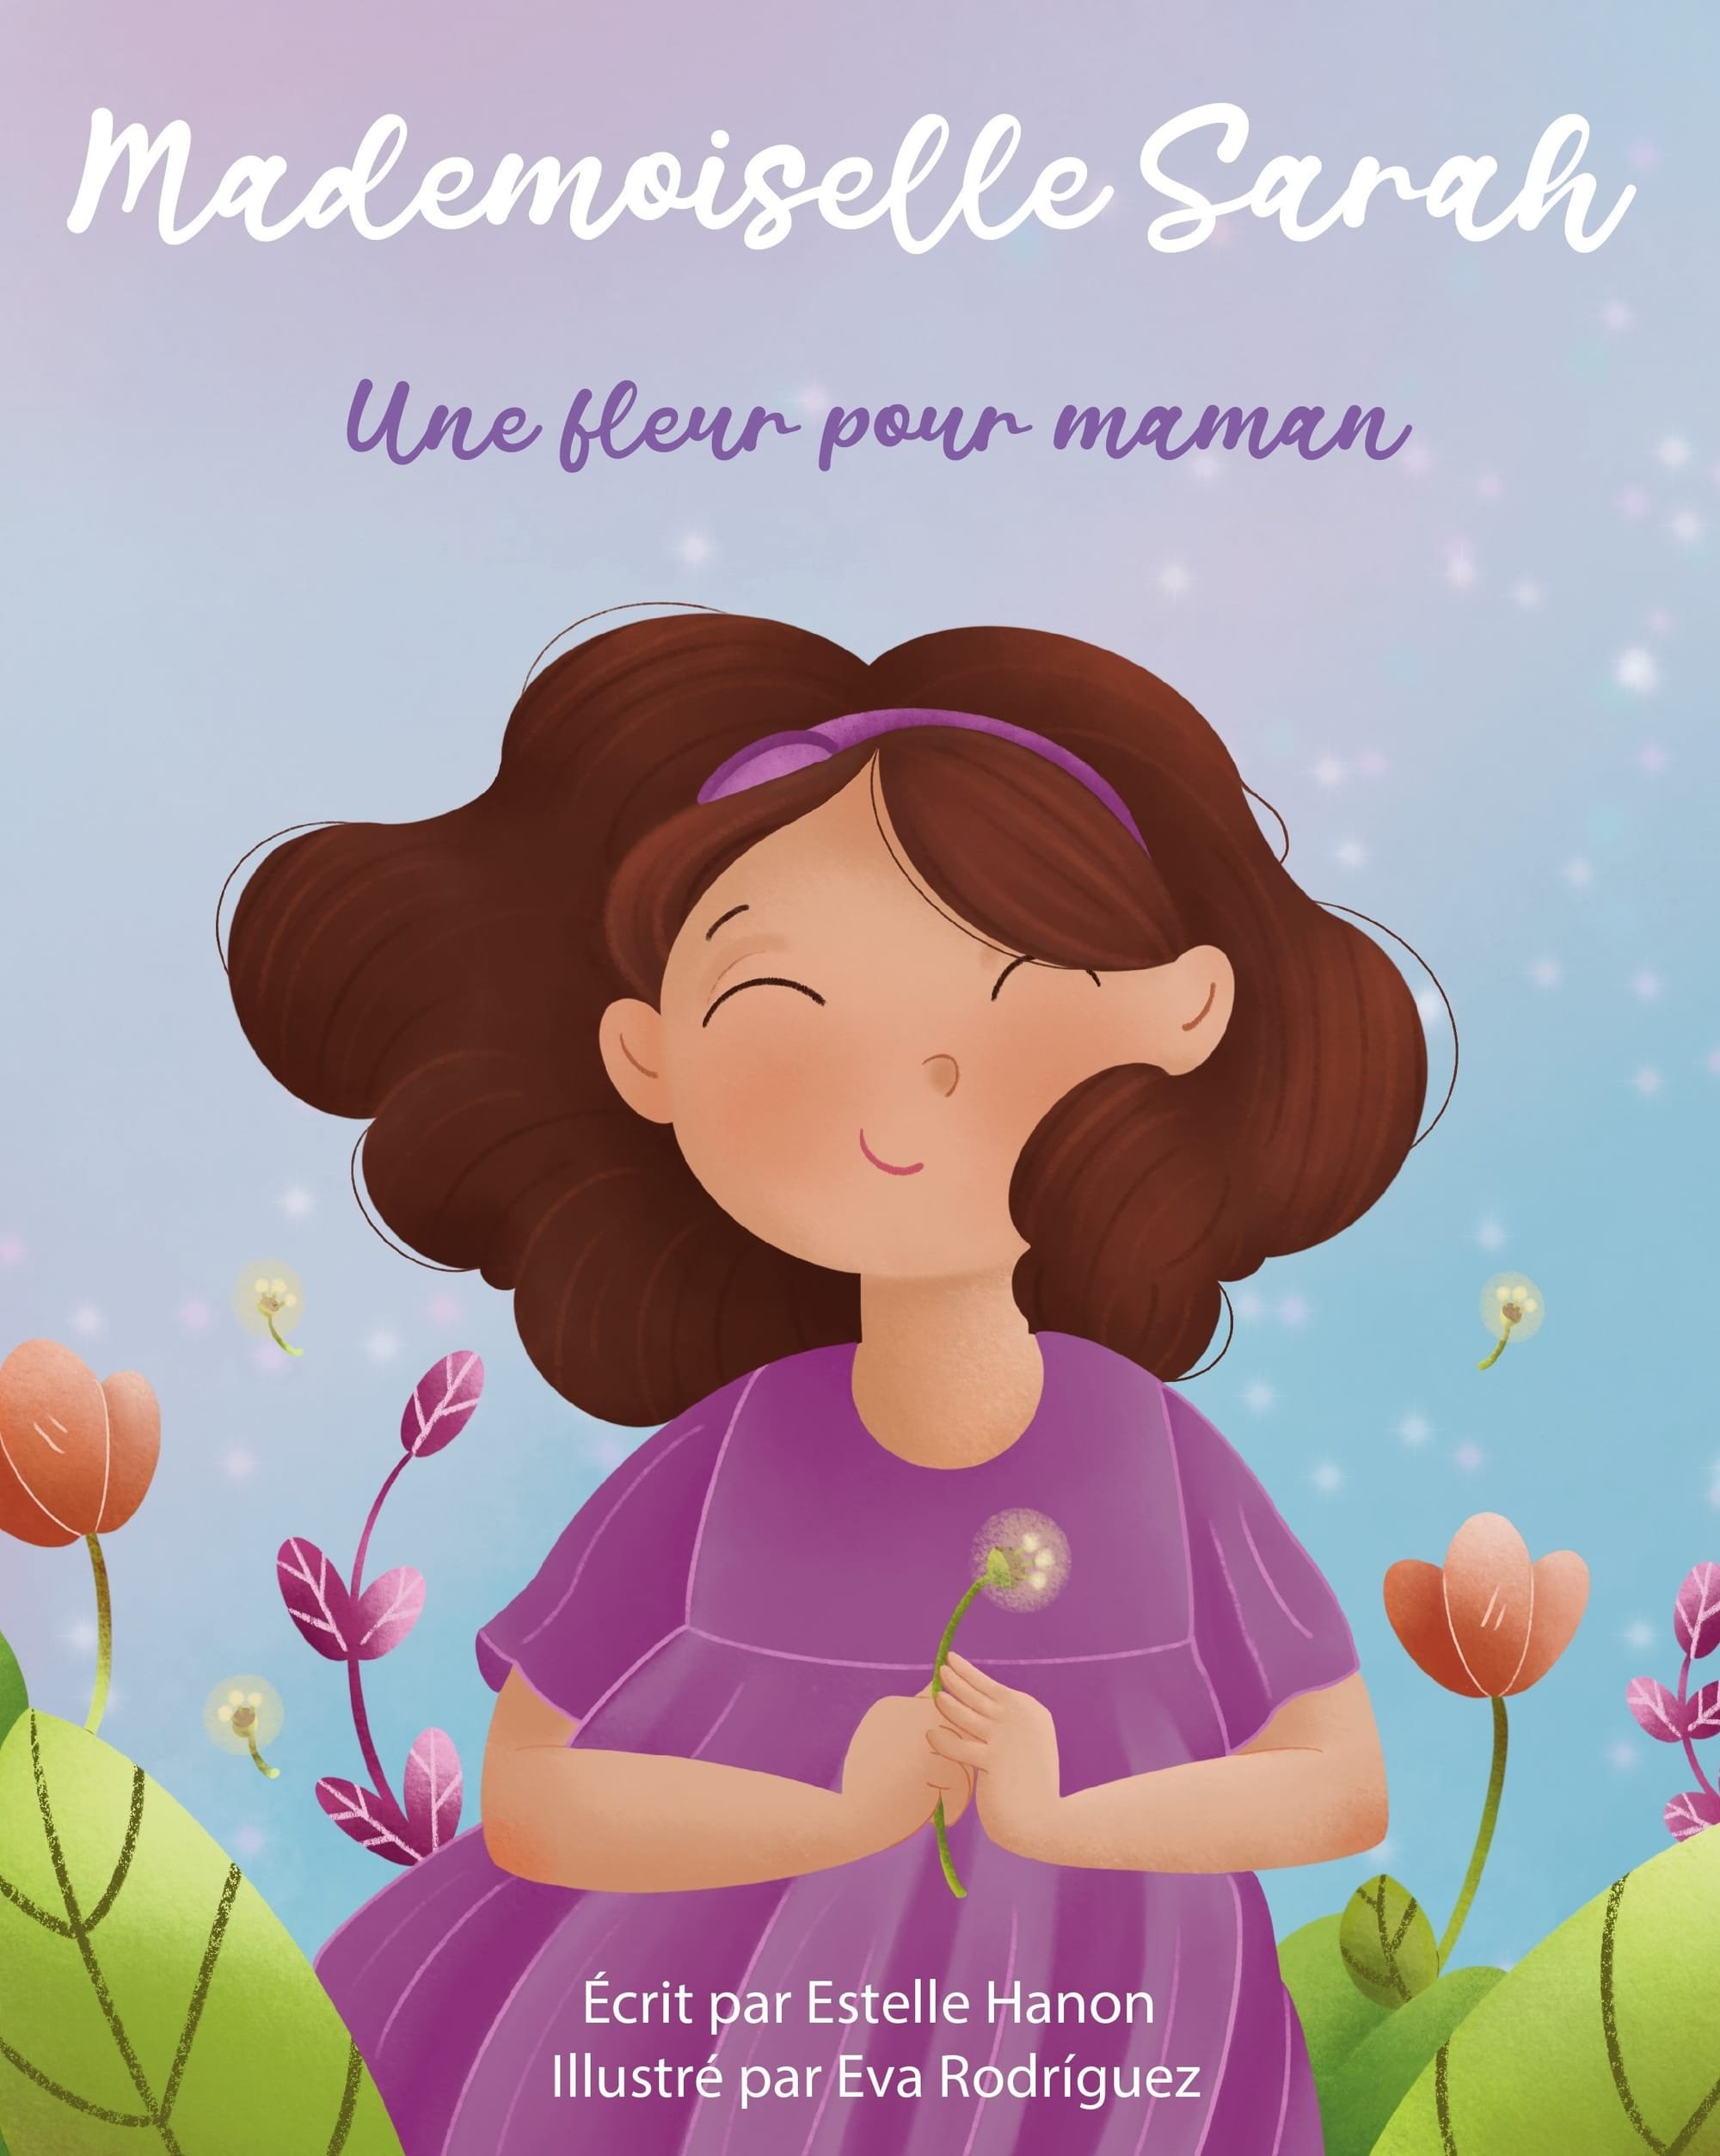 "Mademoiselle Sarah Une fleur pour maman".